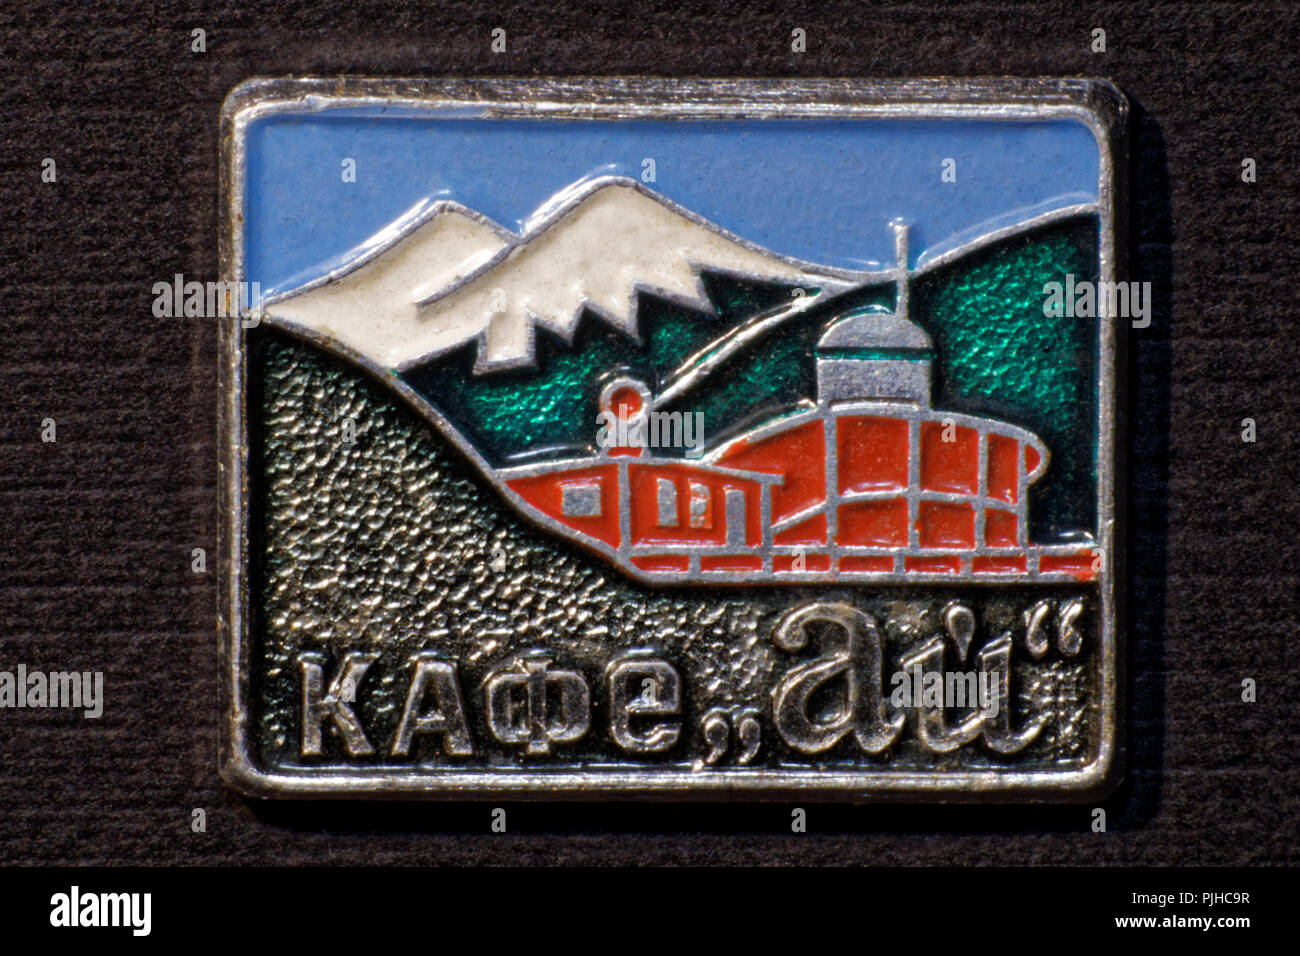 Photo badge 'Cafe Ai',USSR,Russia Stock Photo